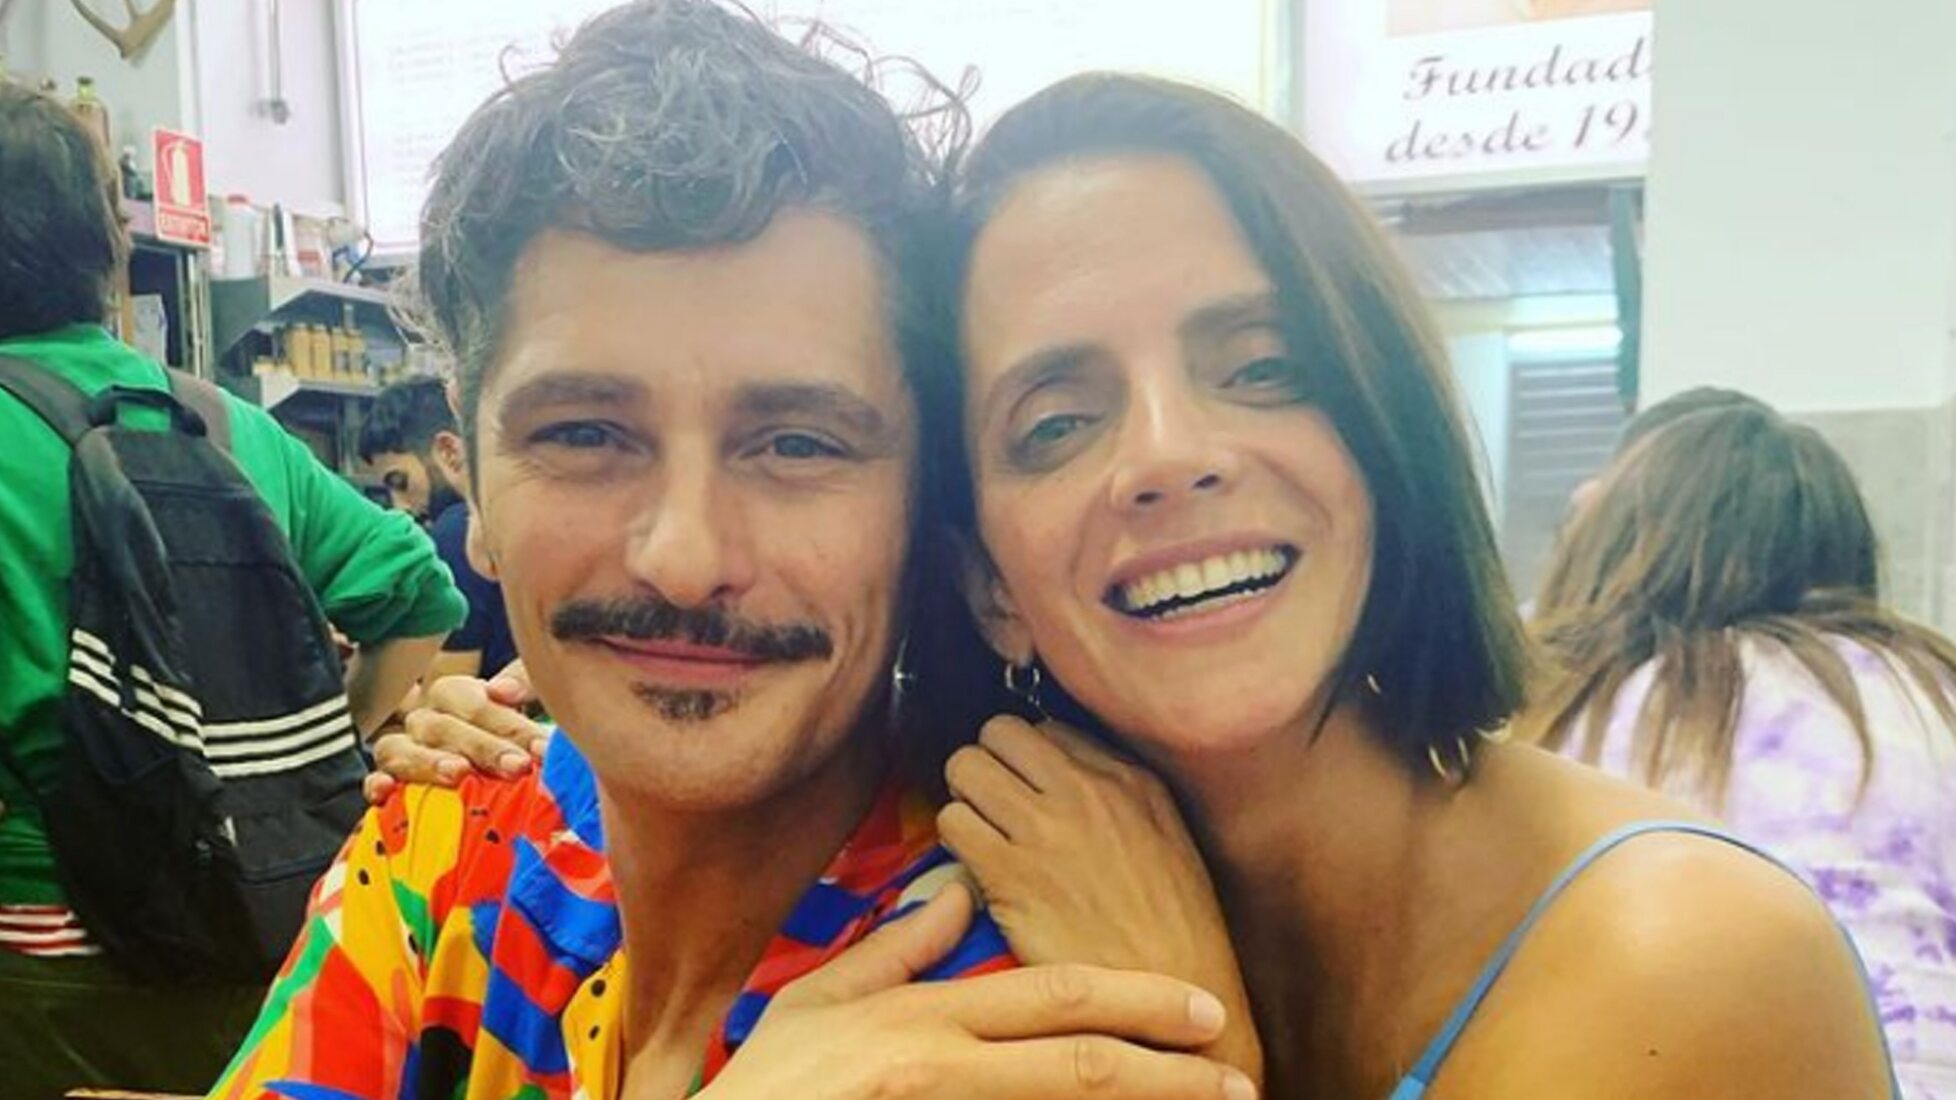 Macarena Gómez y Antonio Pagudo en el Instagram de ella